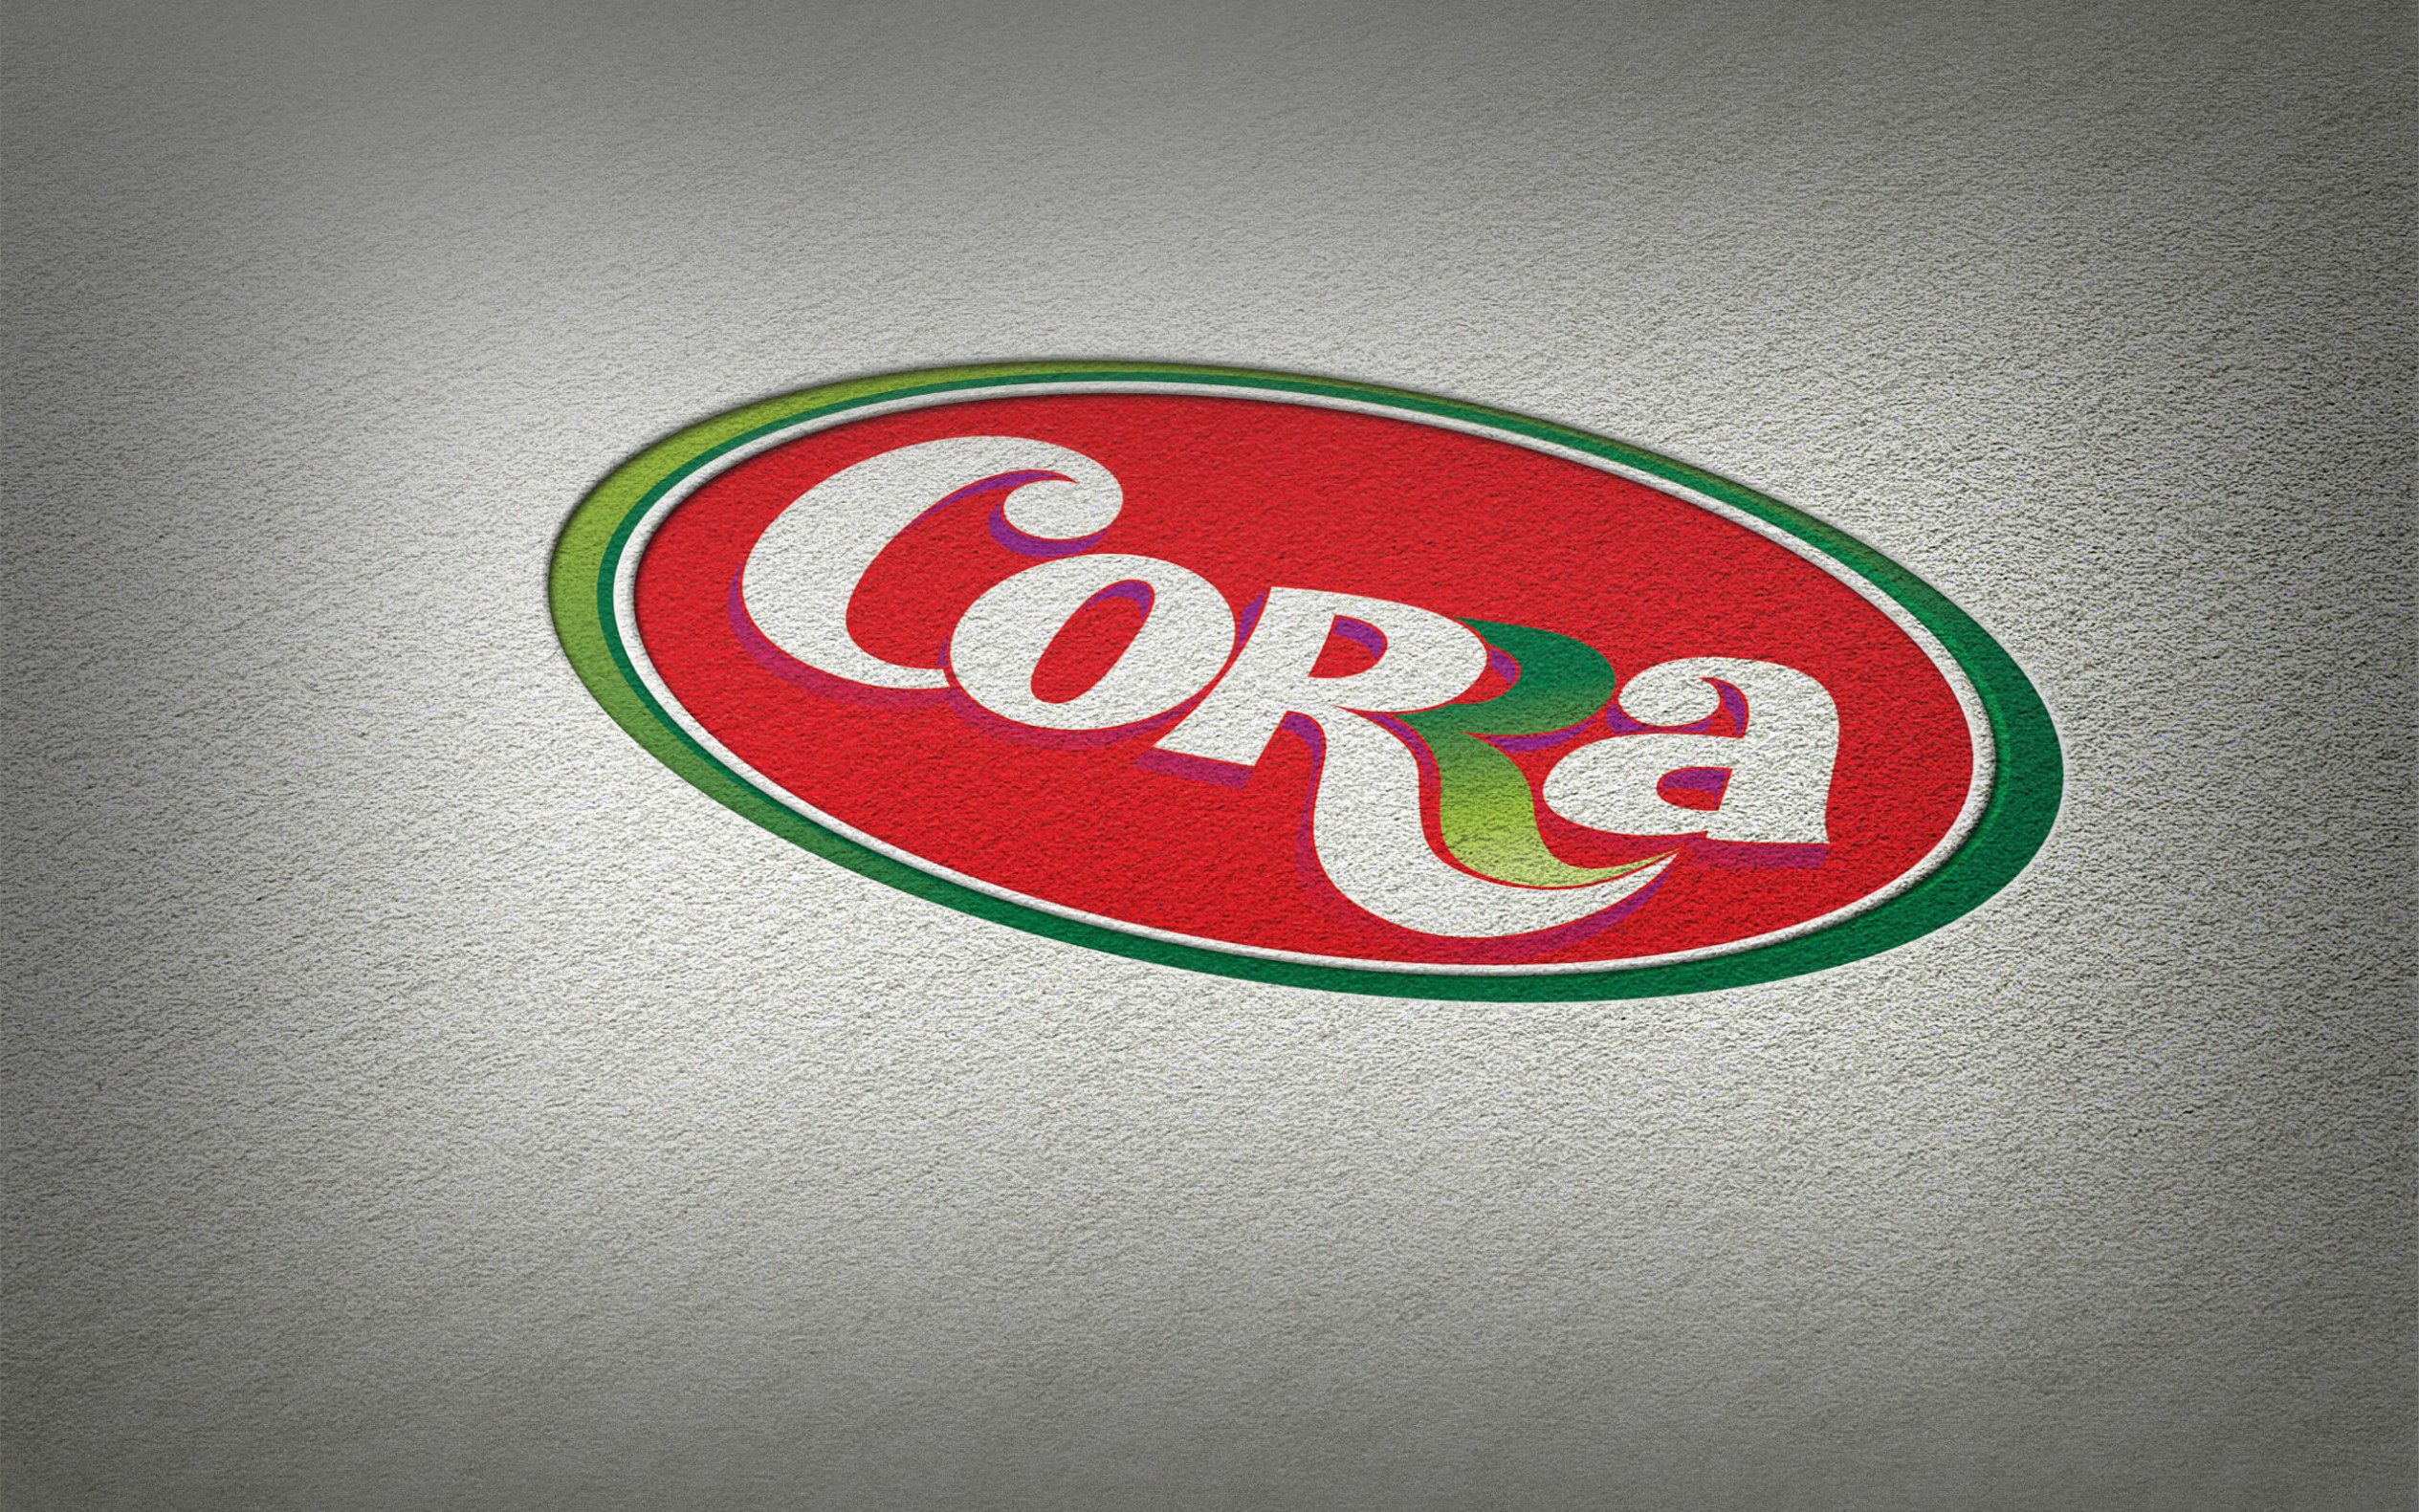 Corra дизайн торговой марки логотипа айдентика